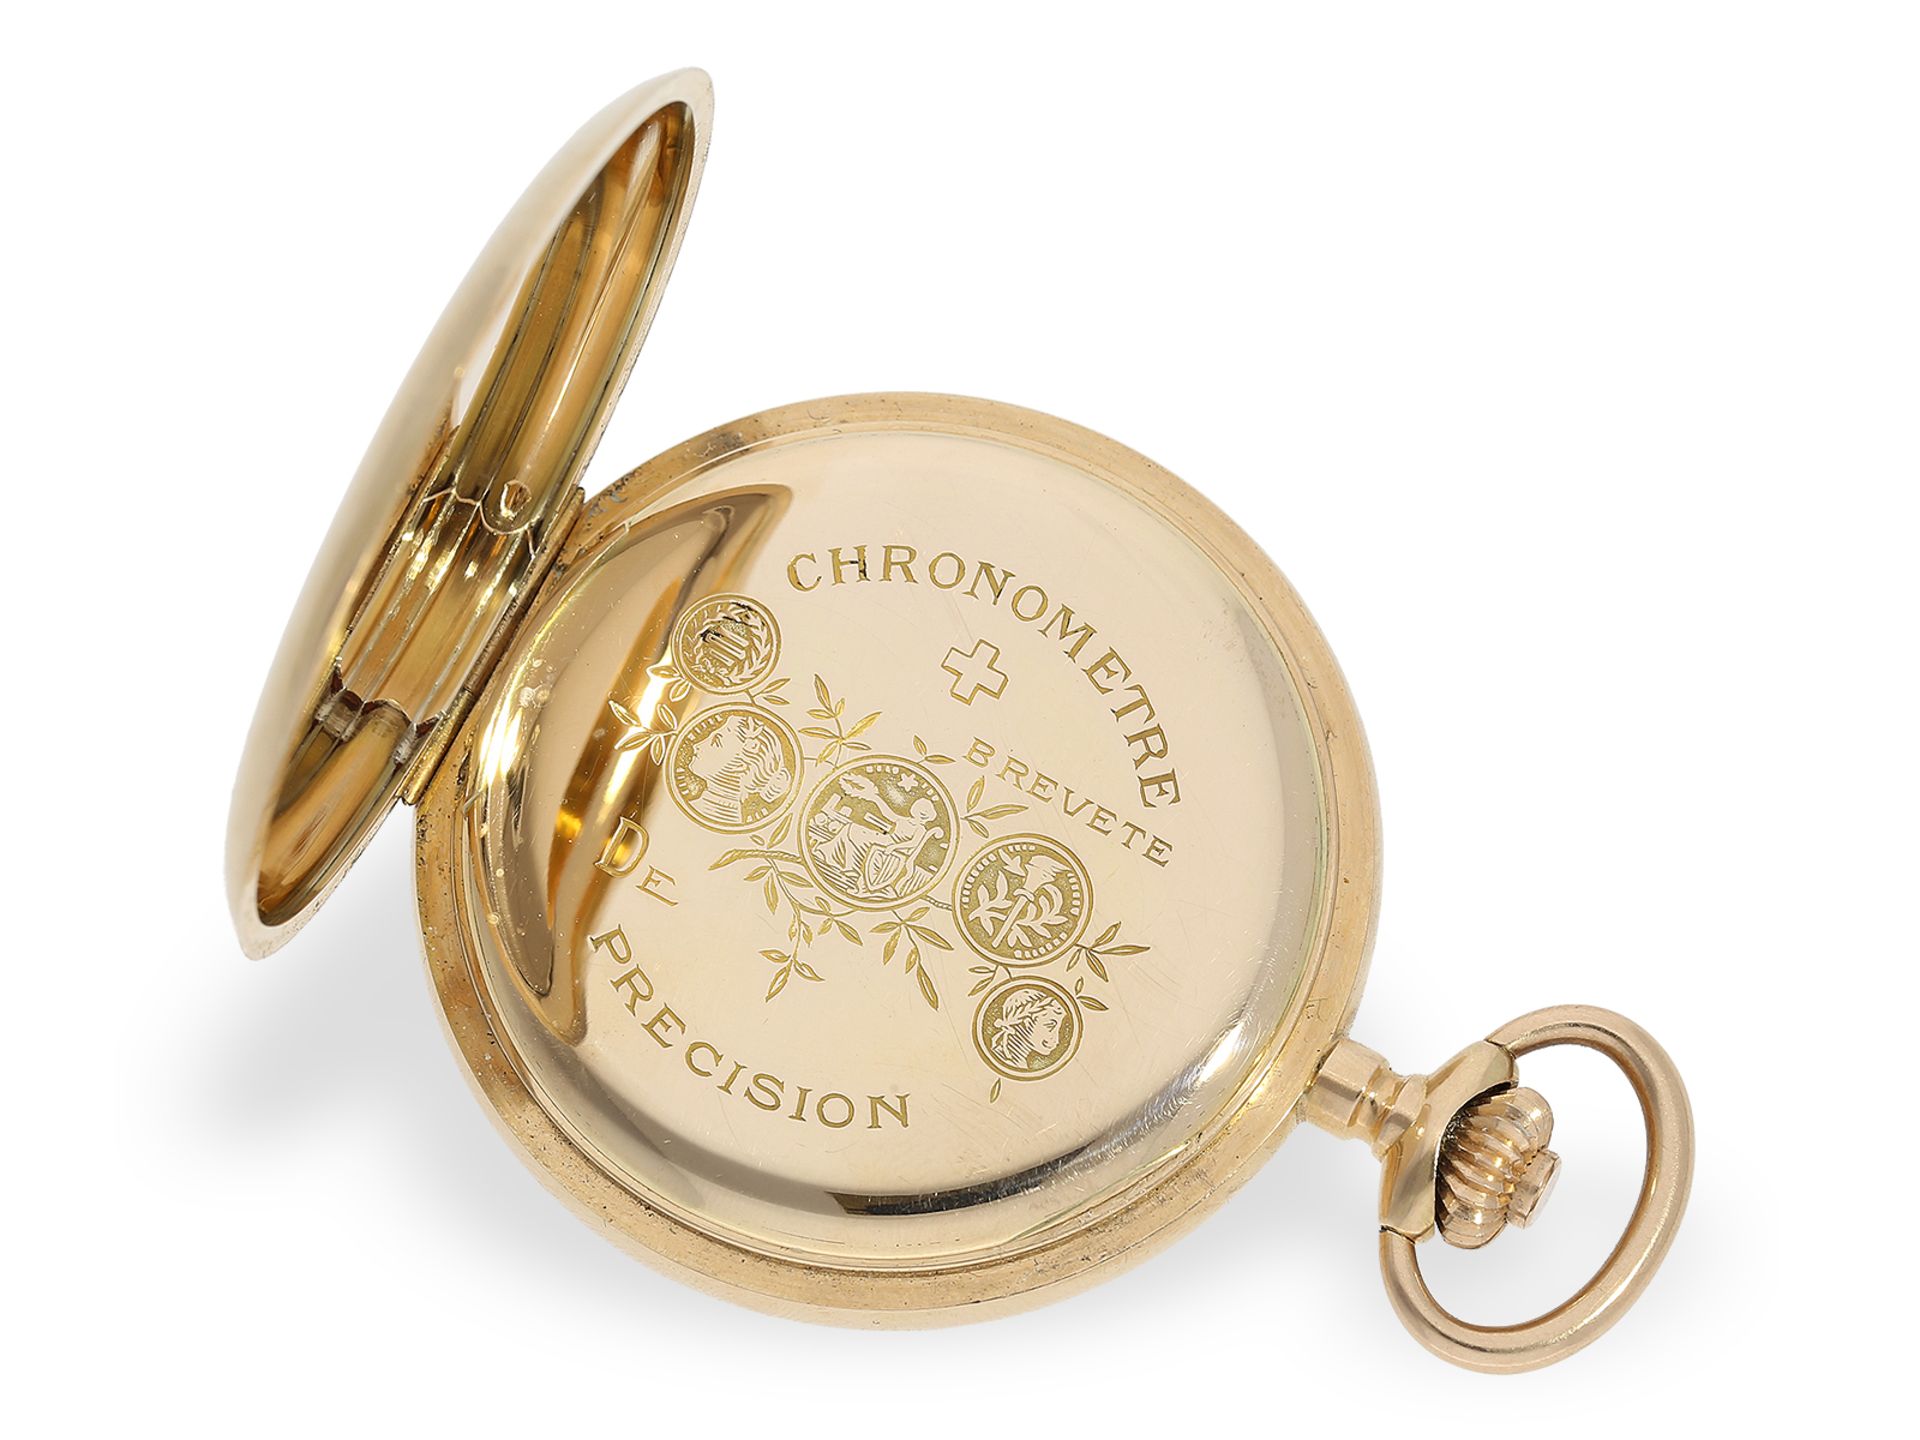 Hochfeine Goldsavonnette mit Chronometerhemmung, Taschenuhr "Chronometre Geneve", ca.1900 - Bild 3 aus 8